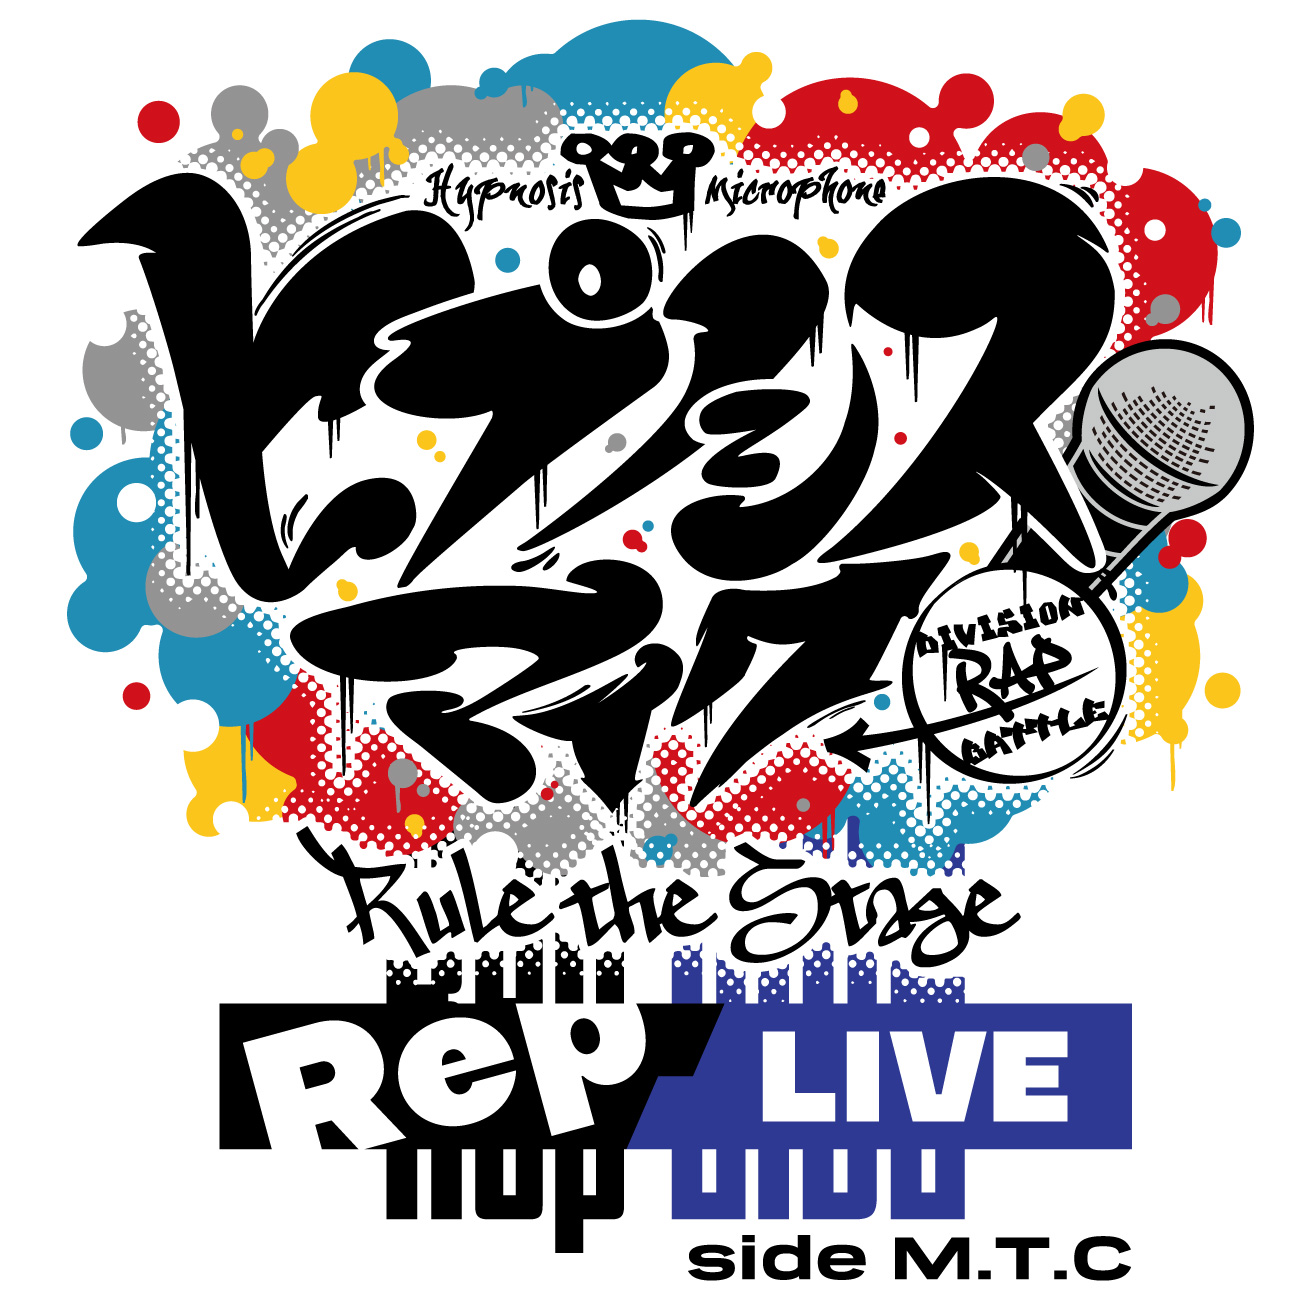 ヒプノシスマイク│『ヒプノシスマイク -Division Rap Battle-』Rule the Stage -Rep LIVE- side M.T.C